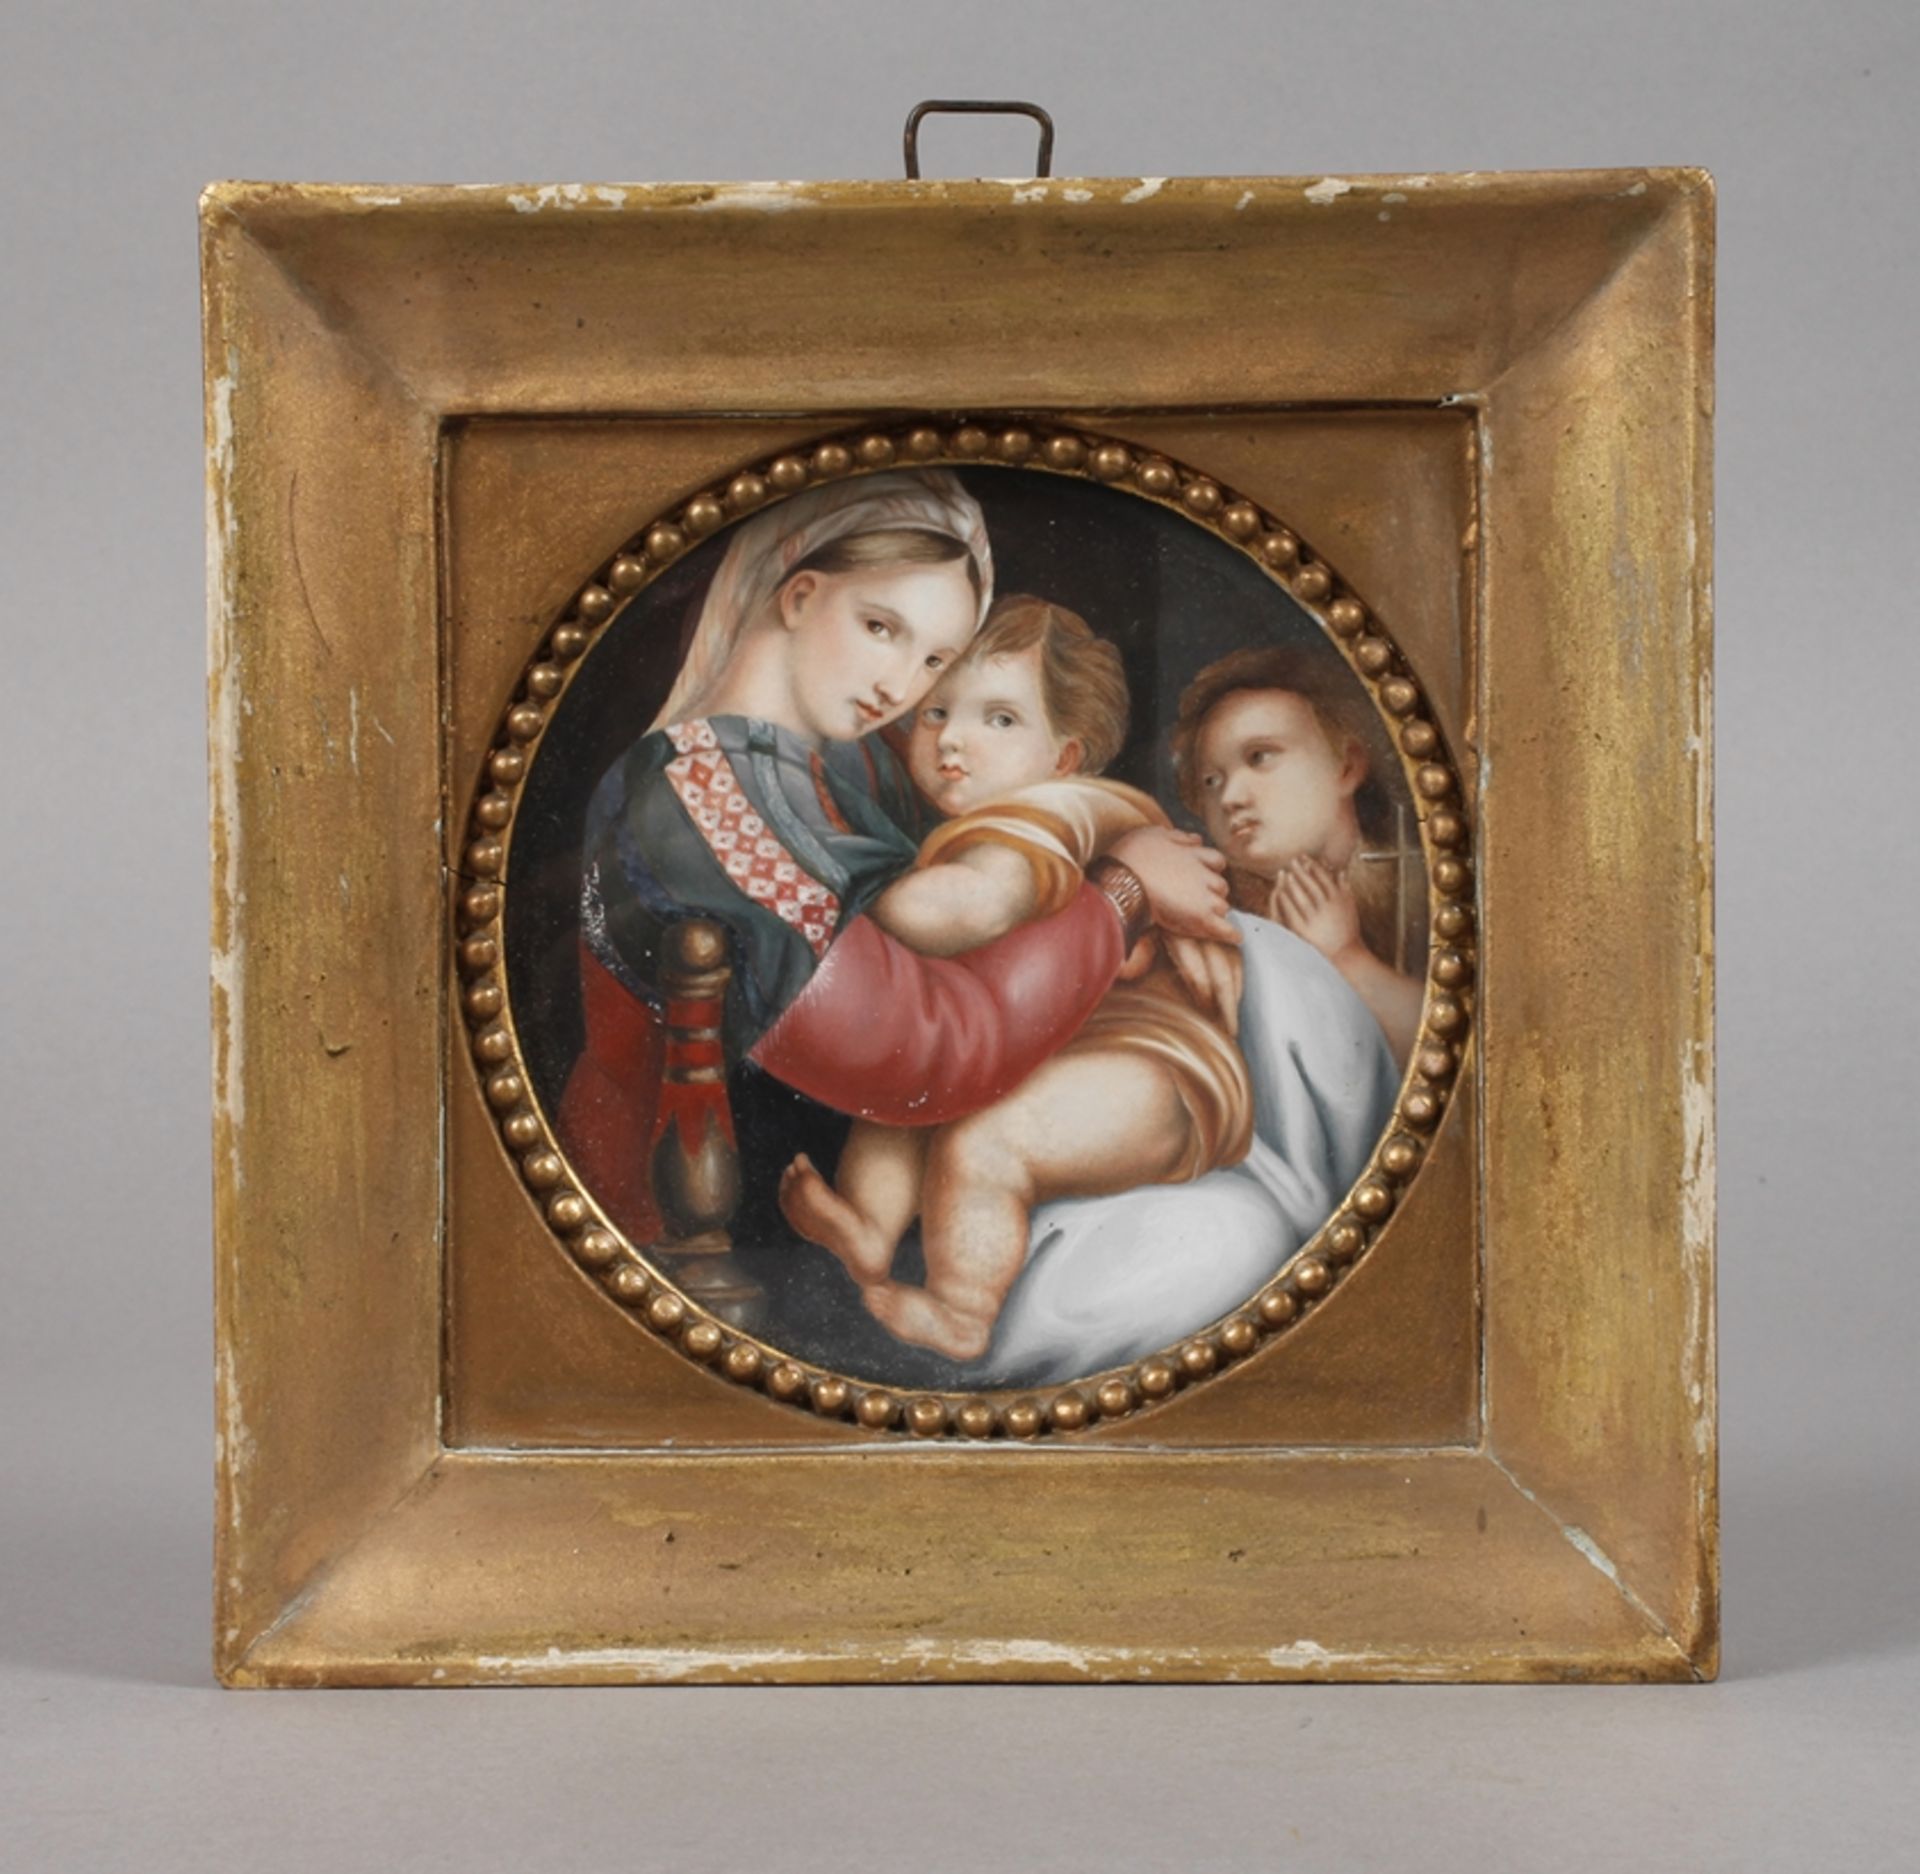 Maria mit Christuskind und Johannes dem Täuferverkleinerte Kopie nach dem Gemälde von Raffael „